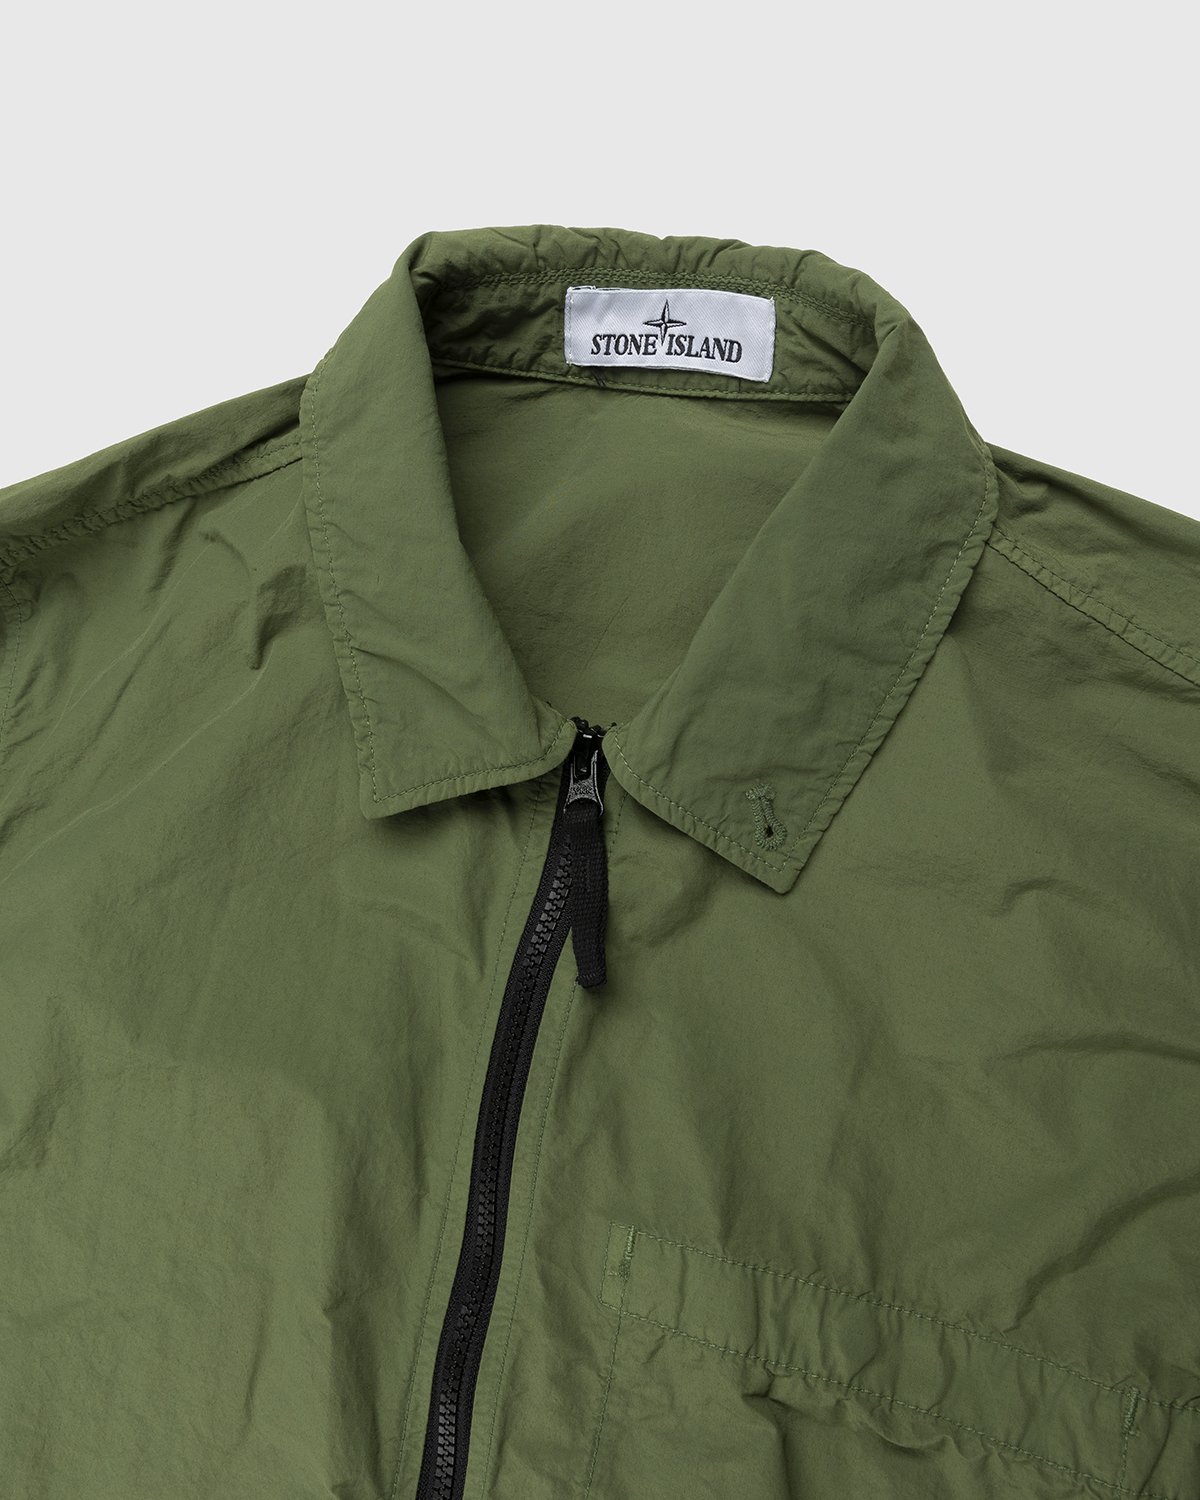 Stone Island - 10502 Garment-Dyed Naslan Light Overshirt Olive - Clothing - Green - Image 3